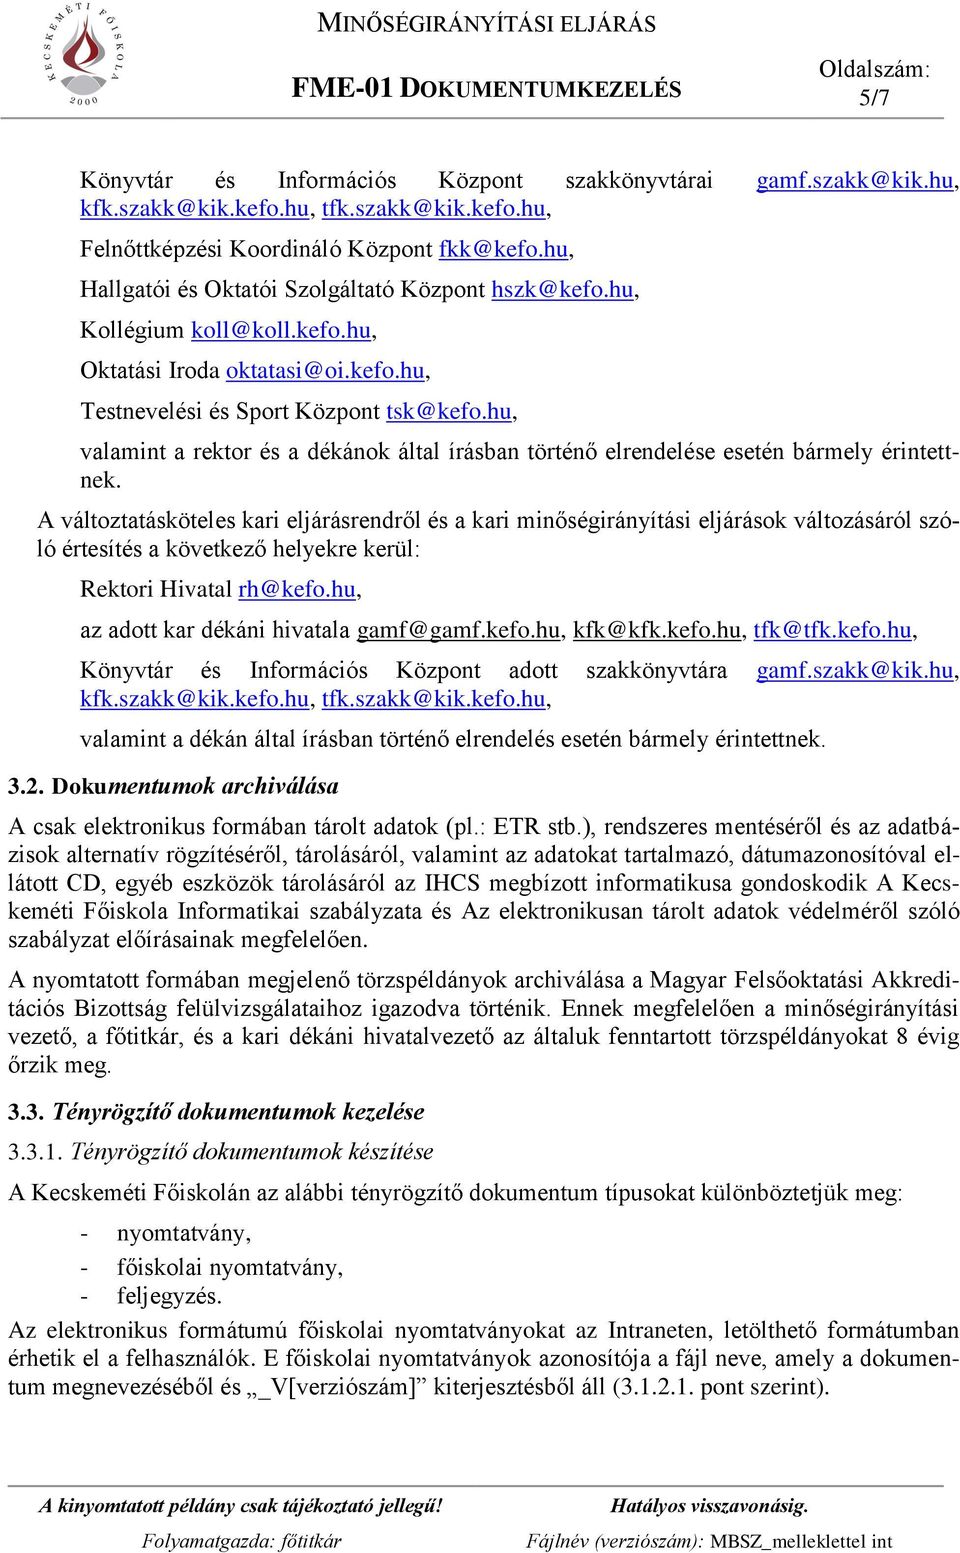 MINŐSÉGBIZTOSÍTÁSI SZABÁLYZAT - PDF Free Download